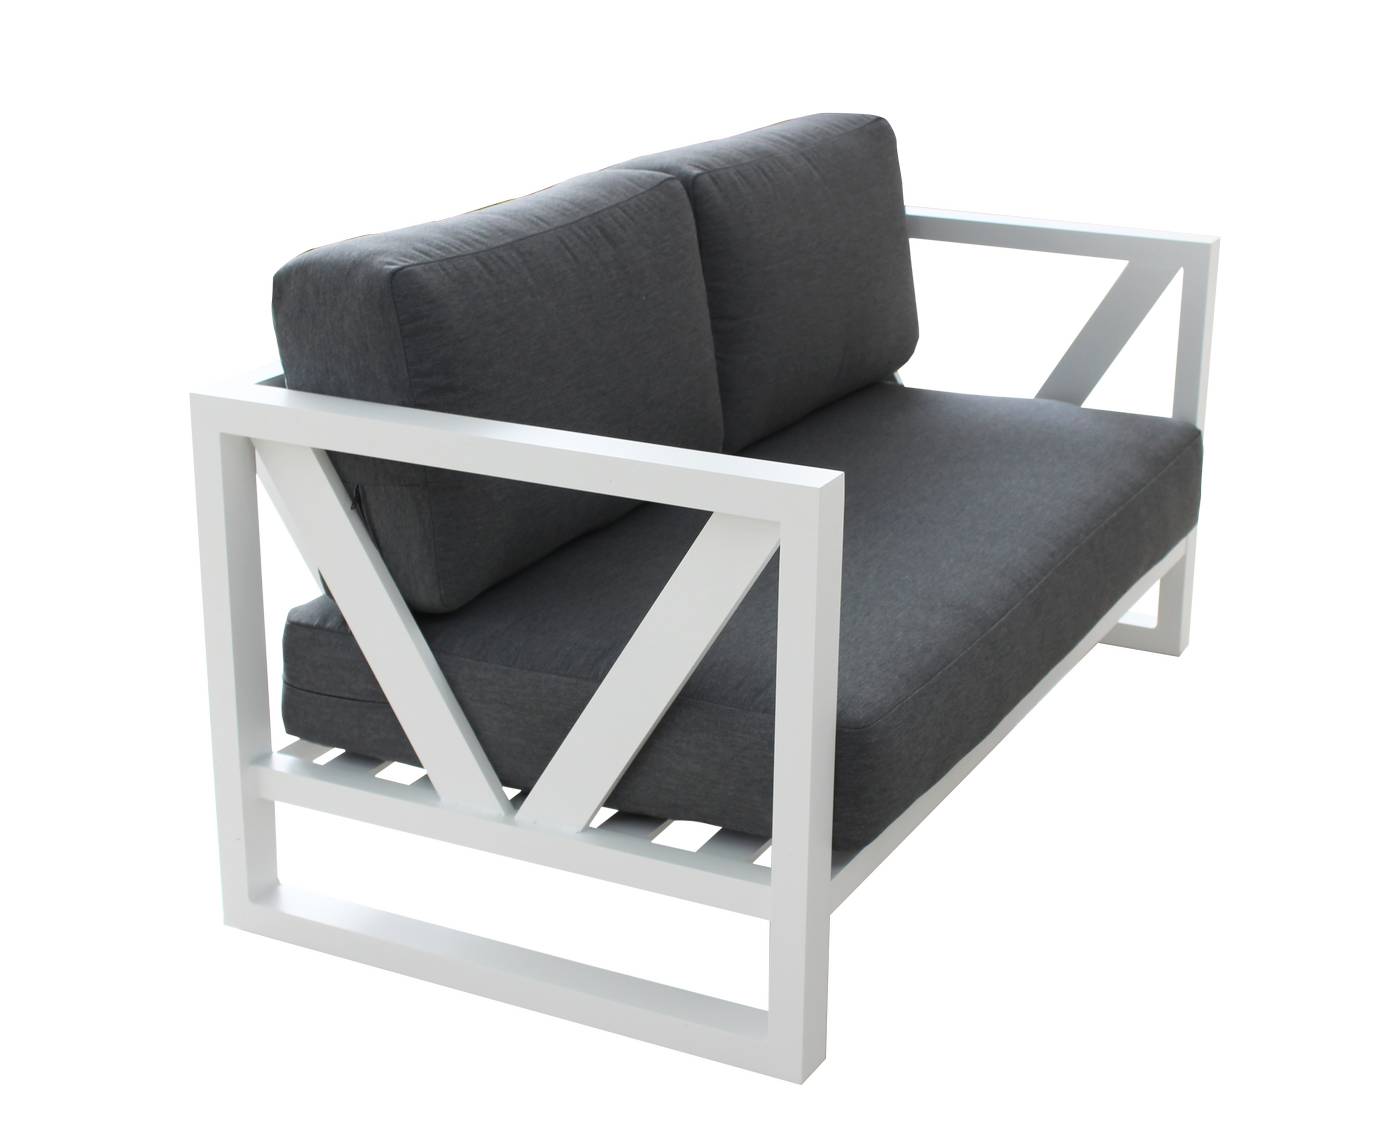 Set Aluminio Luxe Ventus-7 - Lujoso conjunto de aluminio: sofá 2 plazas + 2 sillones + mesa de centro. Color conjunto: blanco, antracita o champagne.